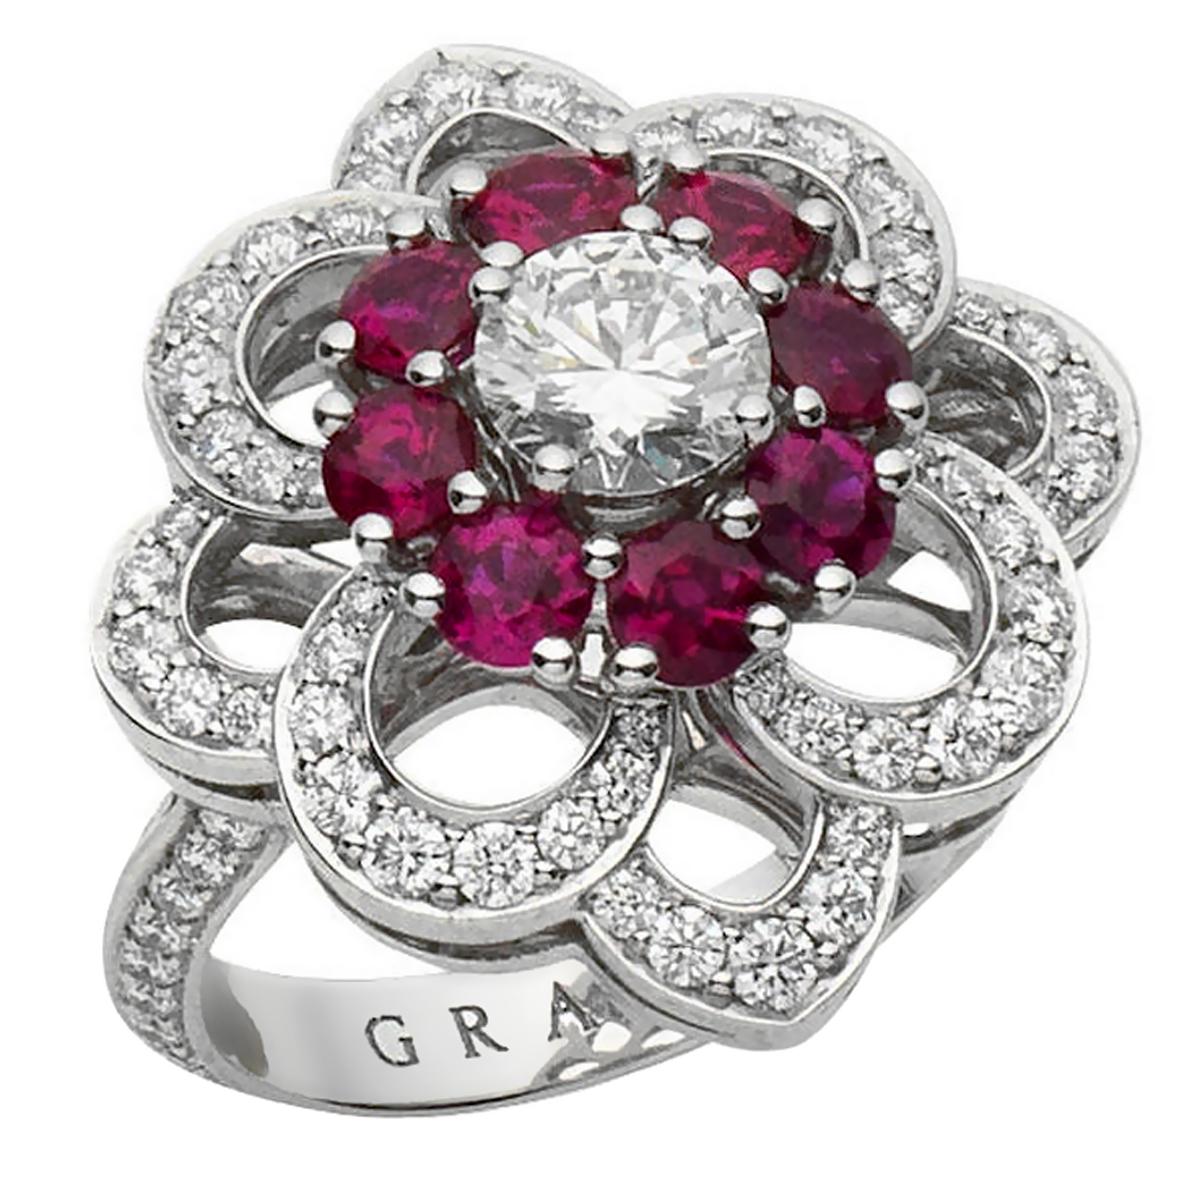 graff flower ring